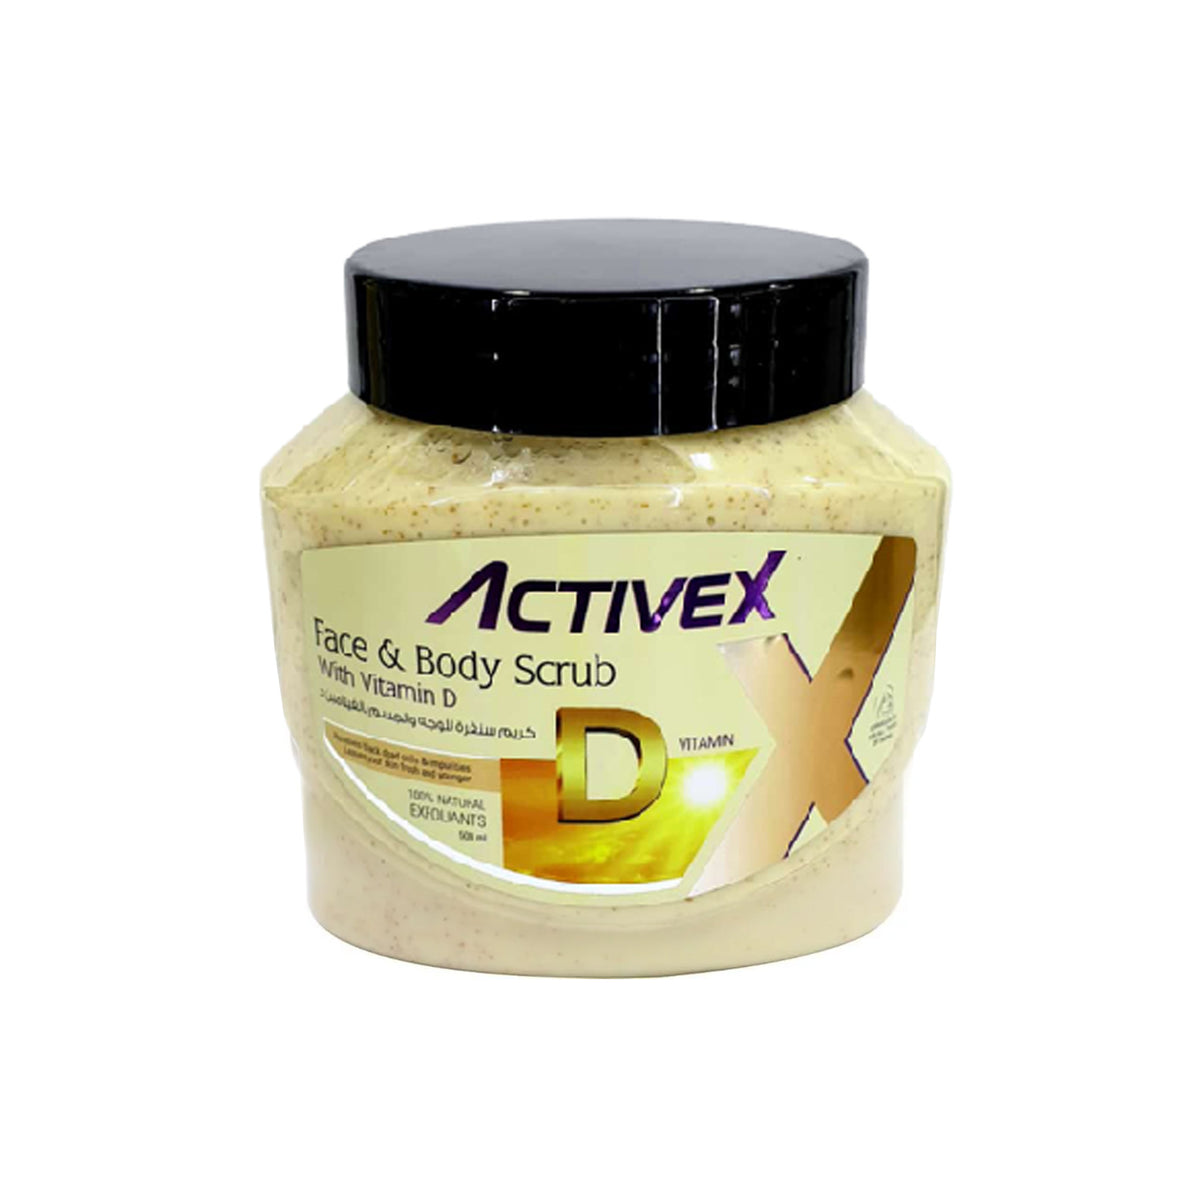 Activex Face & Body Scrub 500 Ml - Vitamin D